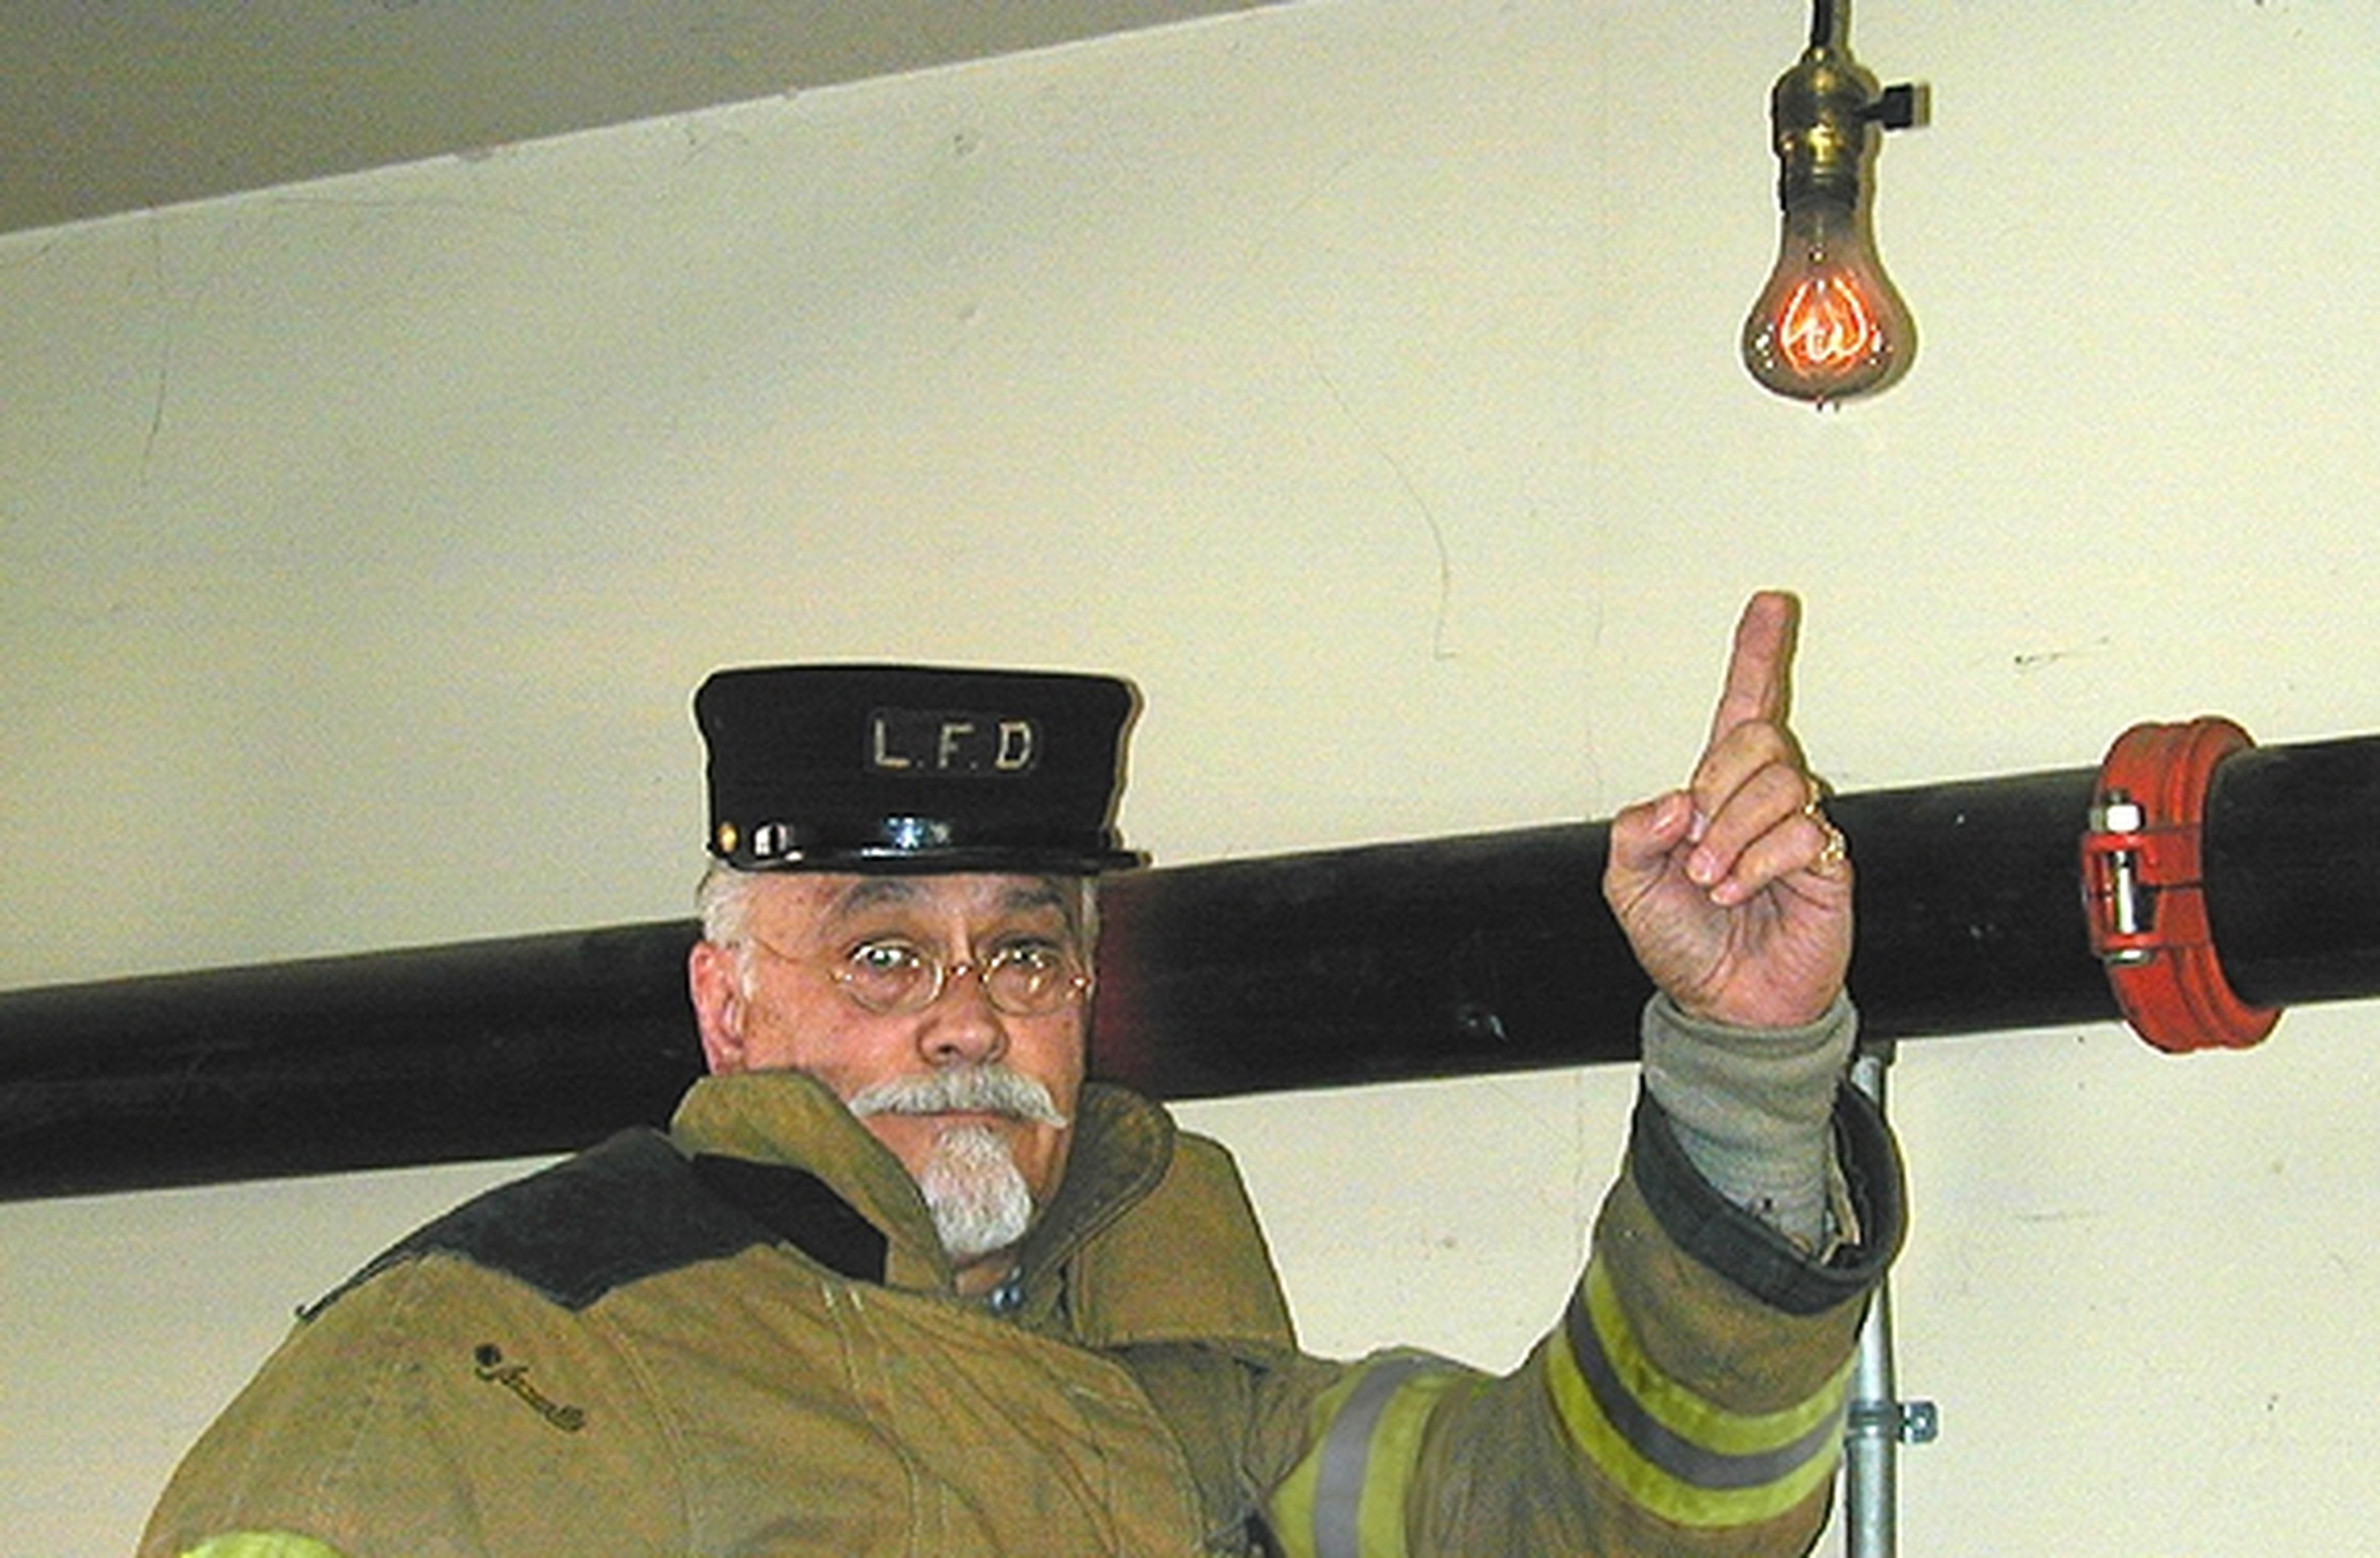 Esta bombilla lleva encendida 121 años en un parque de bomberos, y nadie sabe cómo es posible